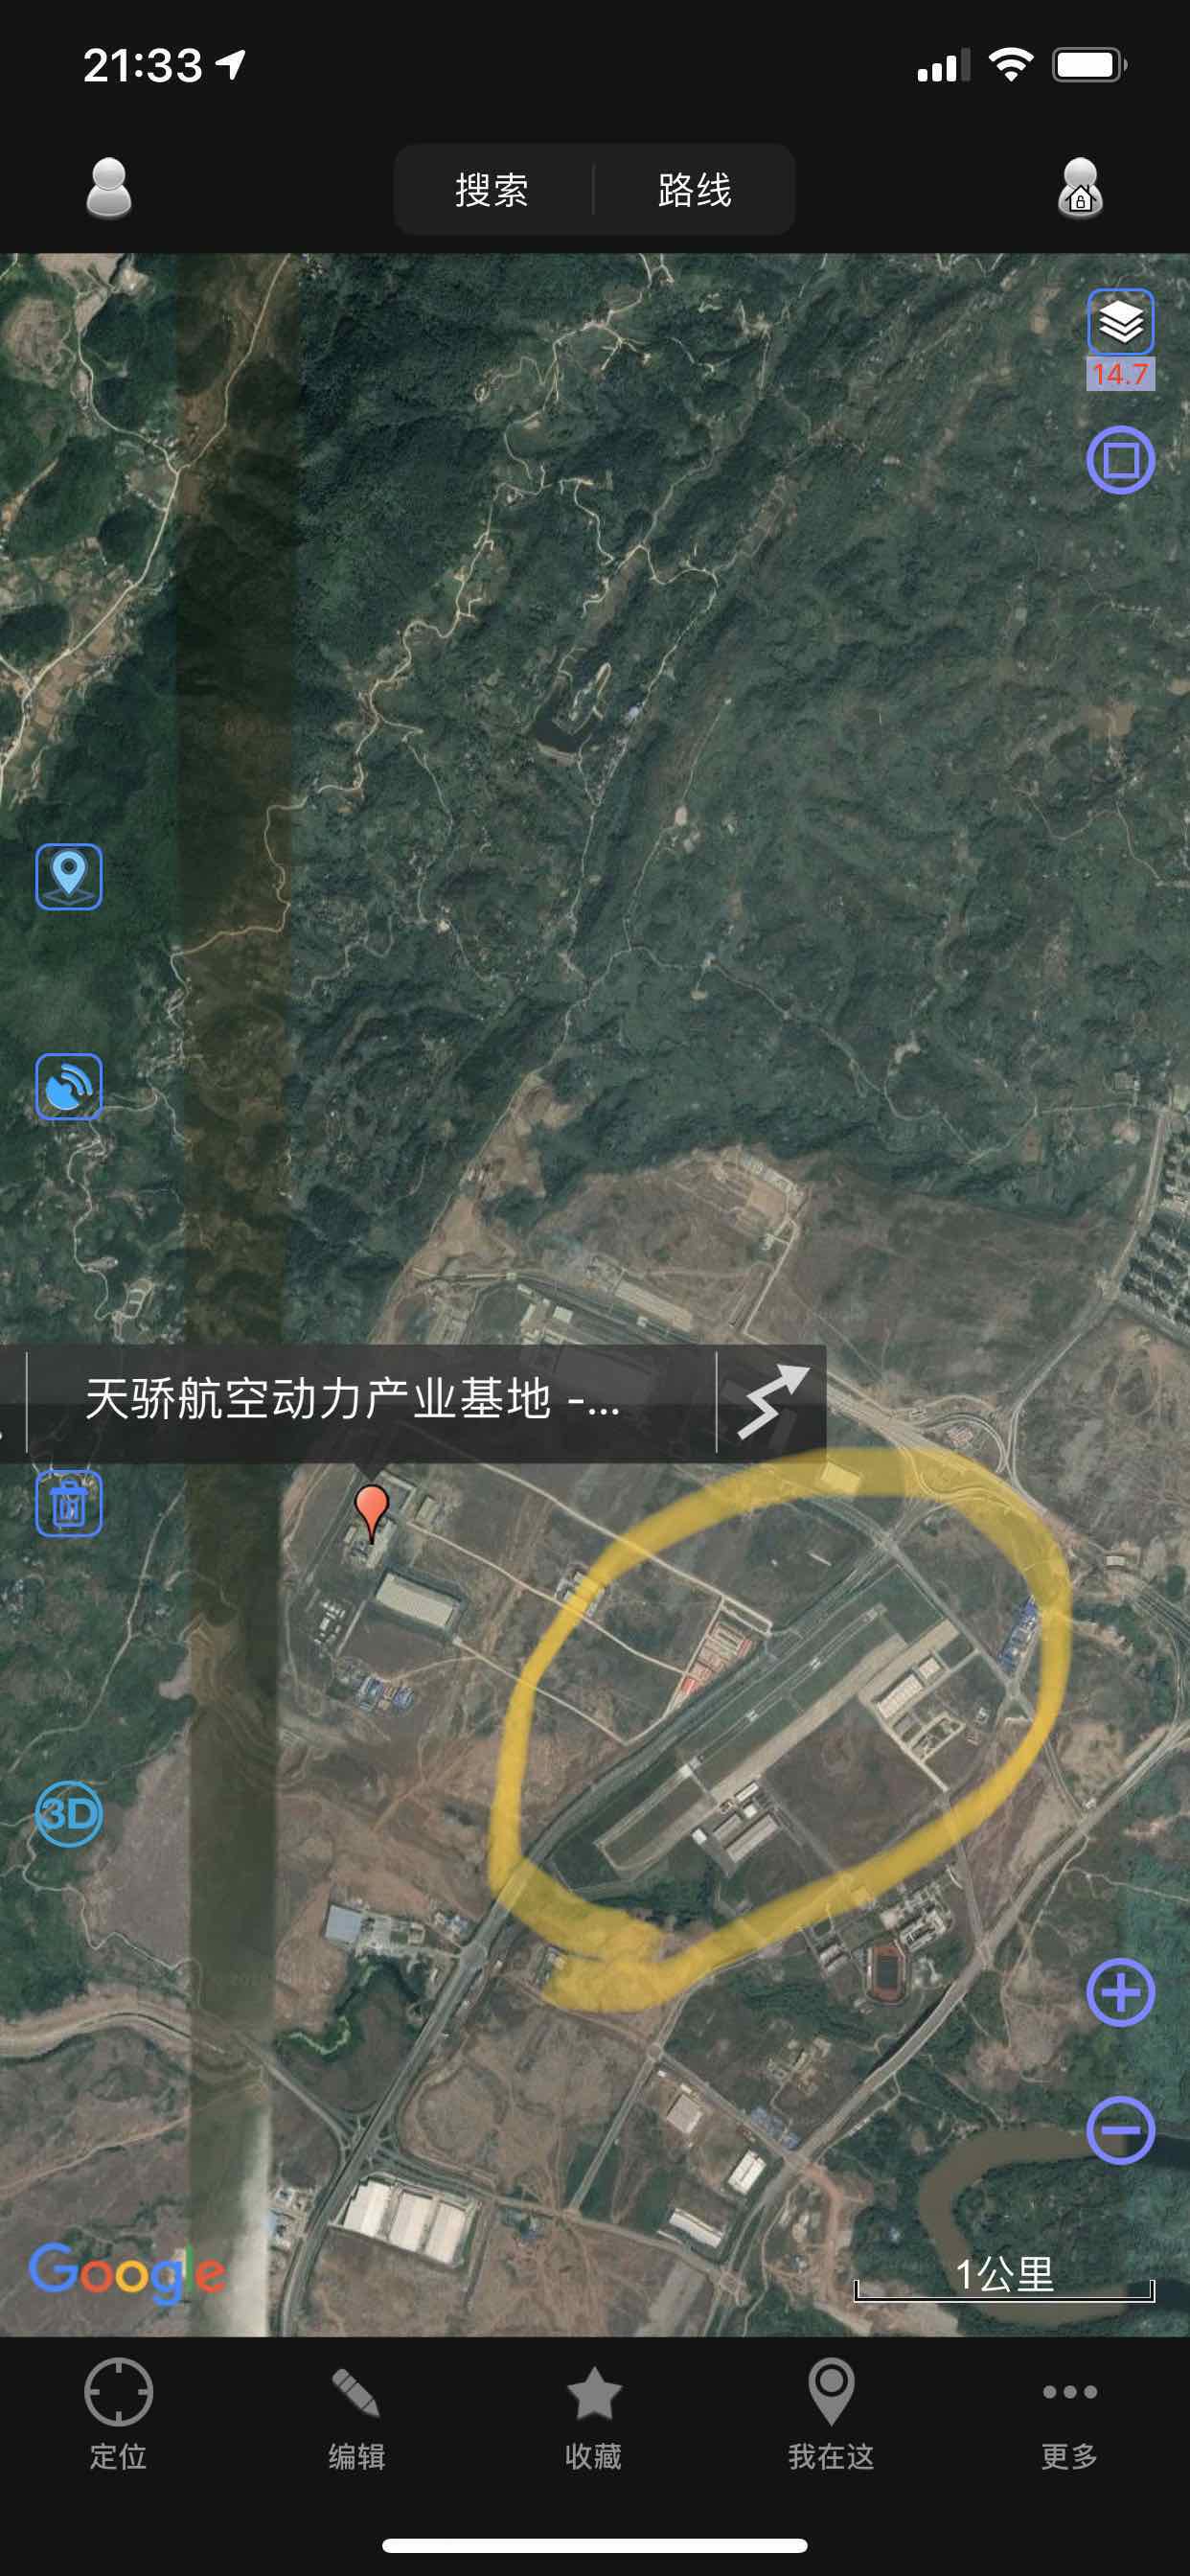 为什么重庆天骄航空动力产业基地旁有企机场?